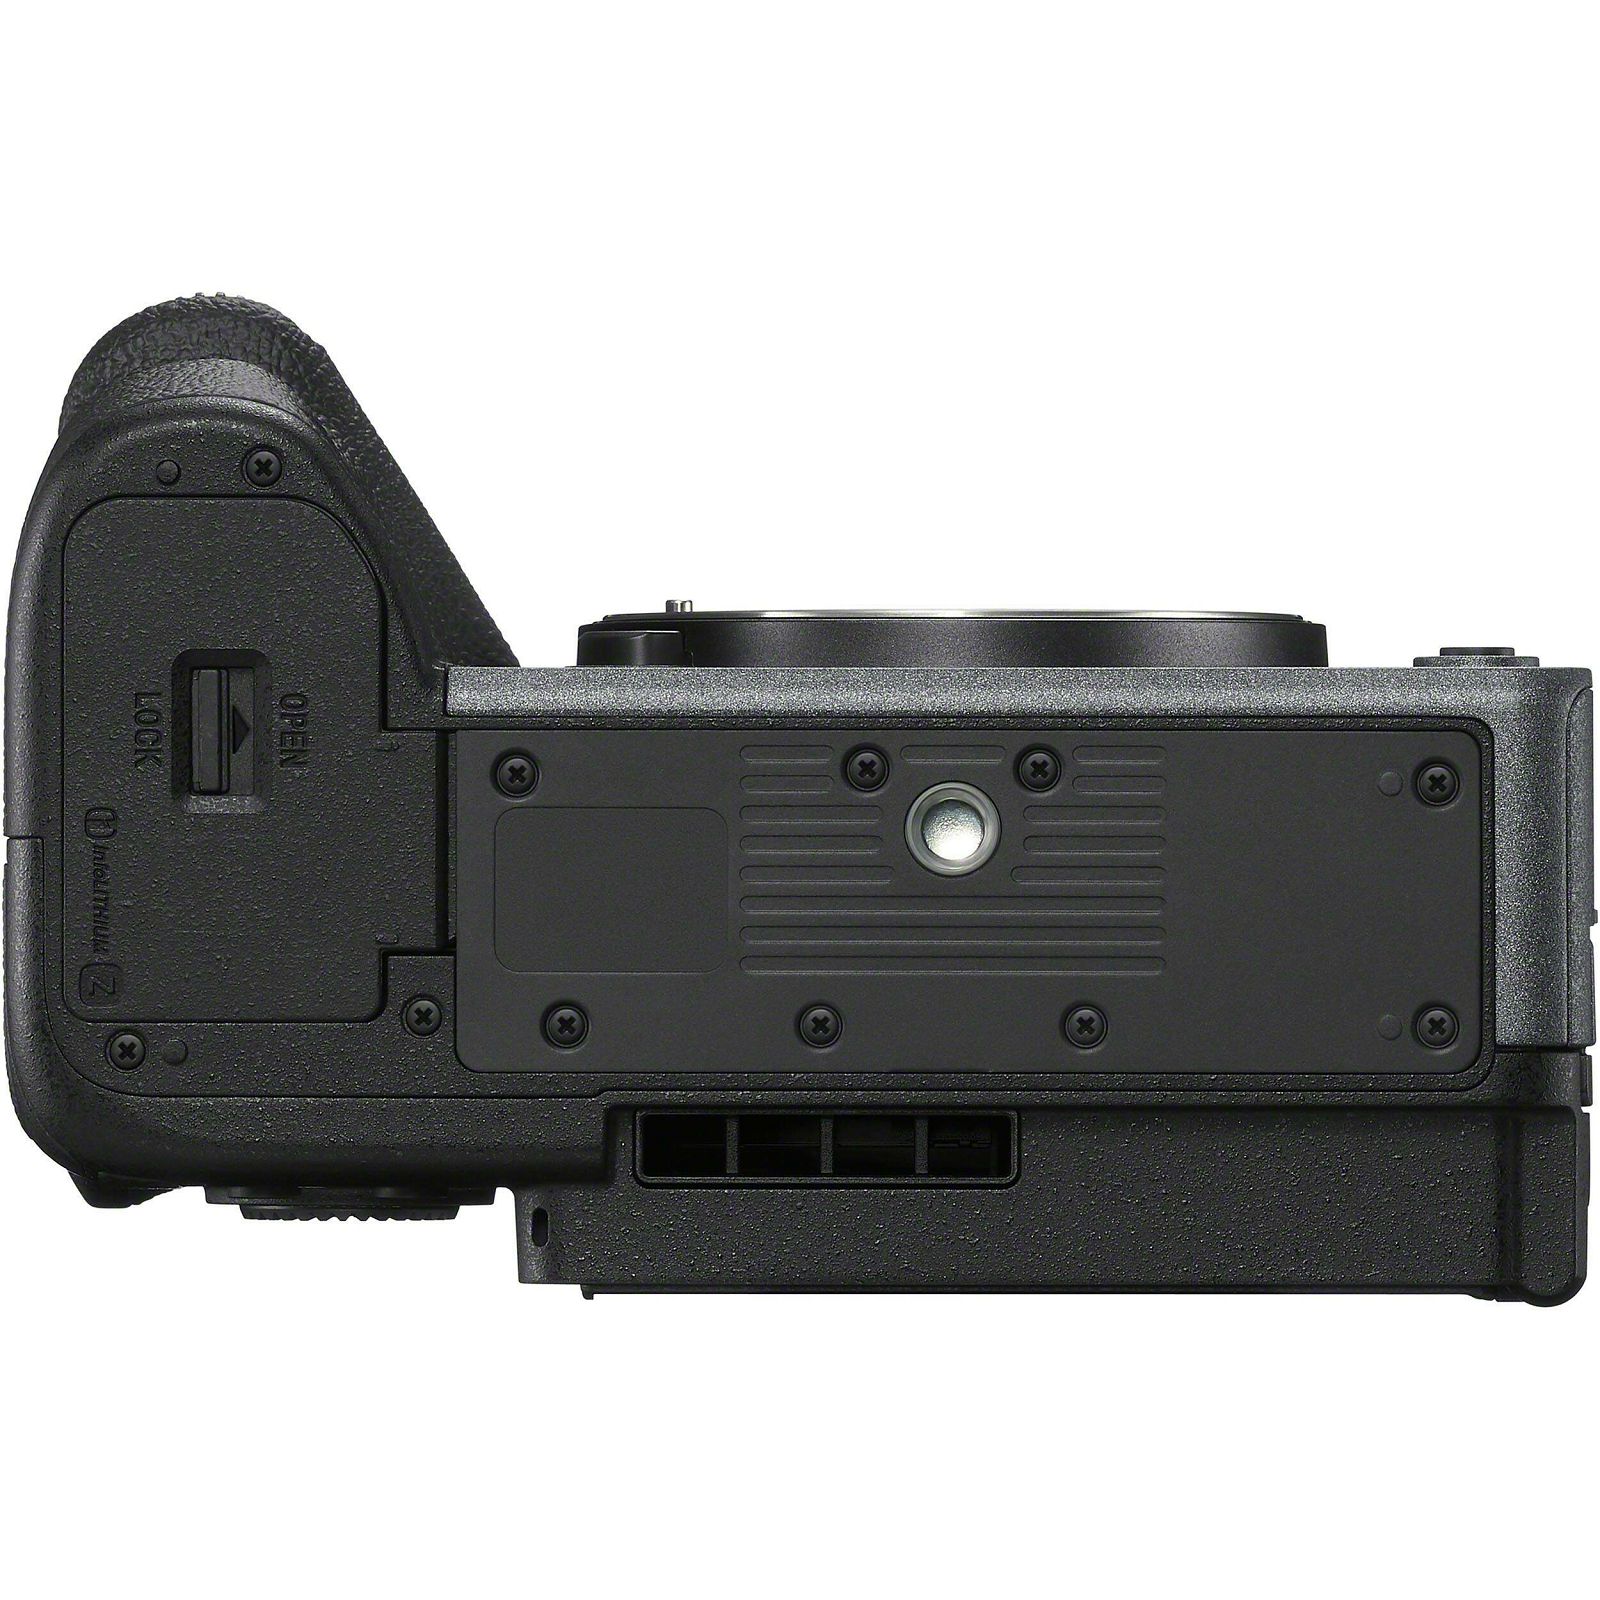 Sony Alpha FX30 Body Cinema Line Camera